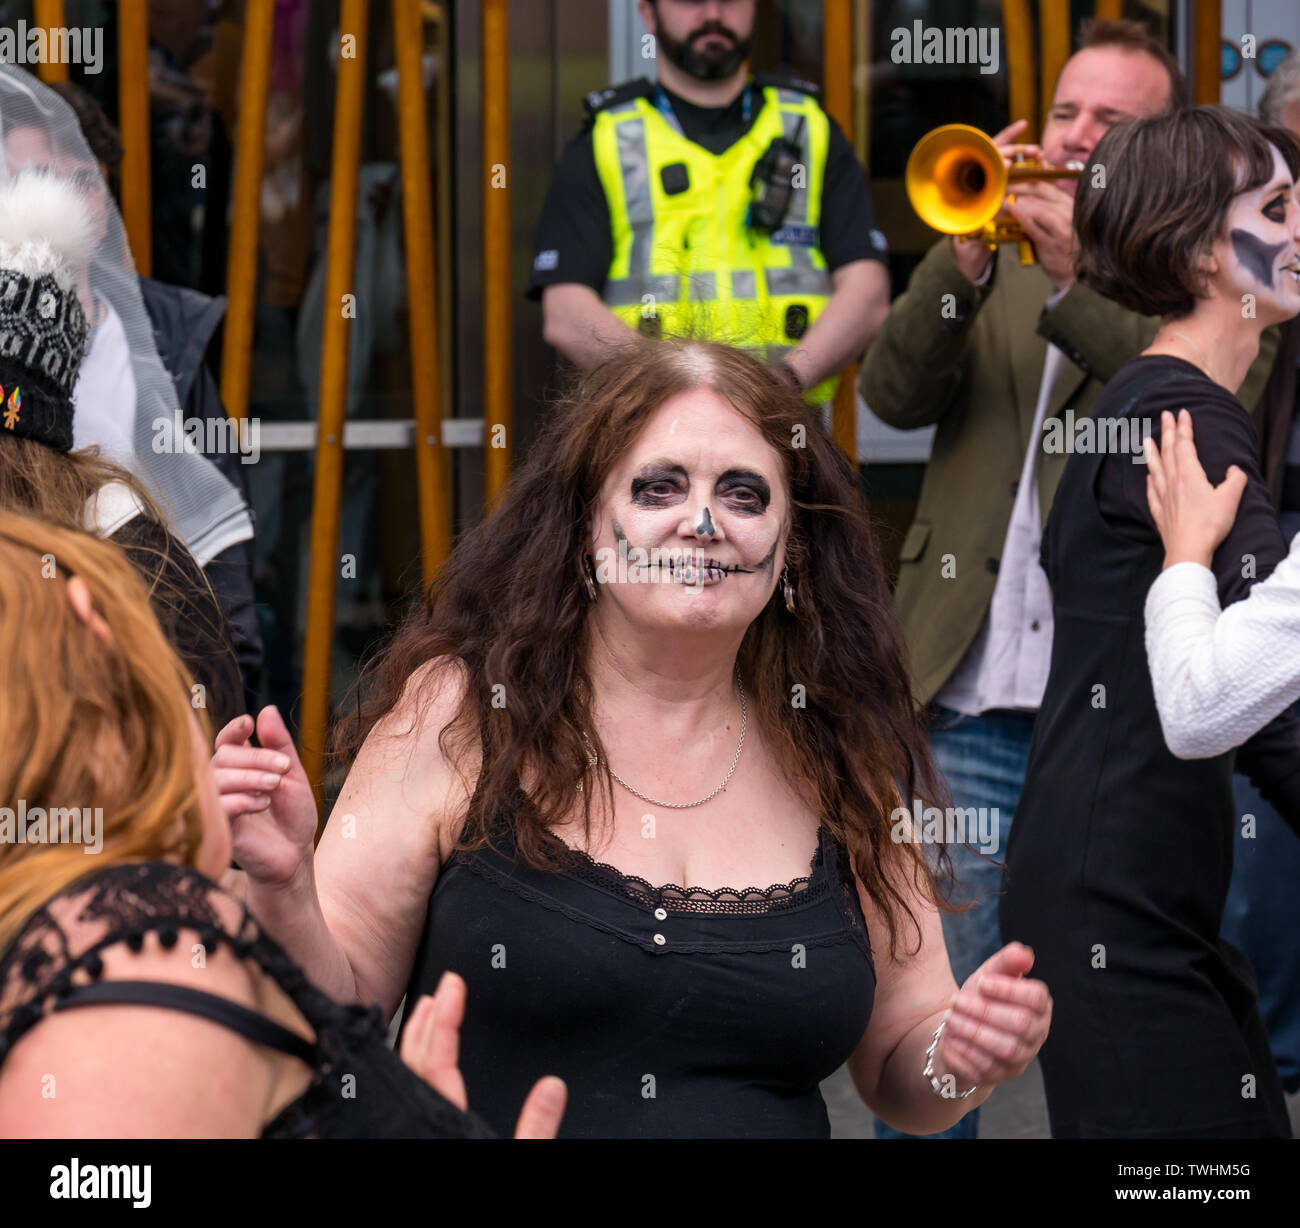 Rébellion d'extinction les changements climatiques les manifestants dans la danse théâtrale une mortalité dans, le Parlement écossais, Edimbourg, Ecosse, Royaume-Uni Banque D'Images